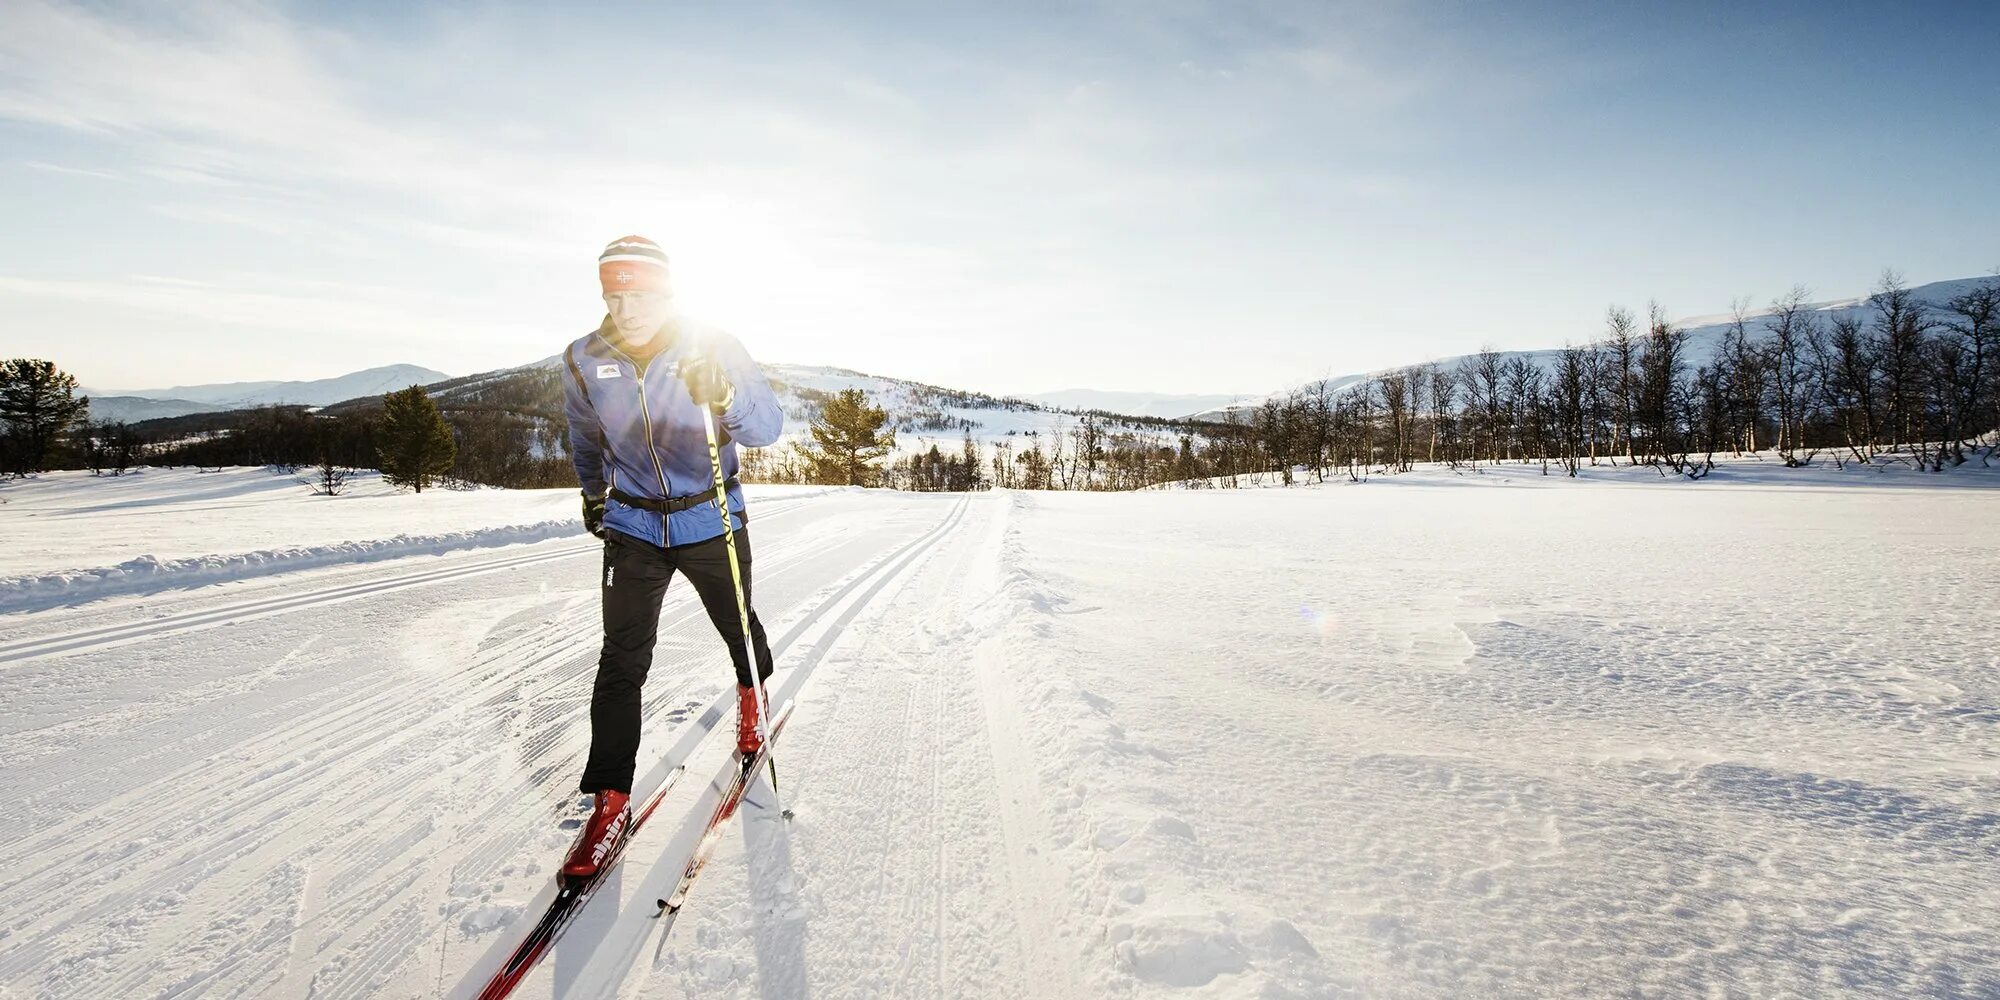 4 лыжная трасса. Беговые лыжи в Норвегии. Кросс Кантри лыжи. Лыжная трасса. Лыжник на трассе.